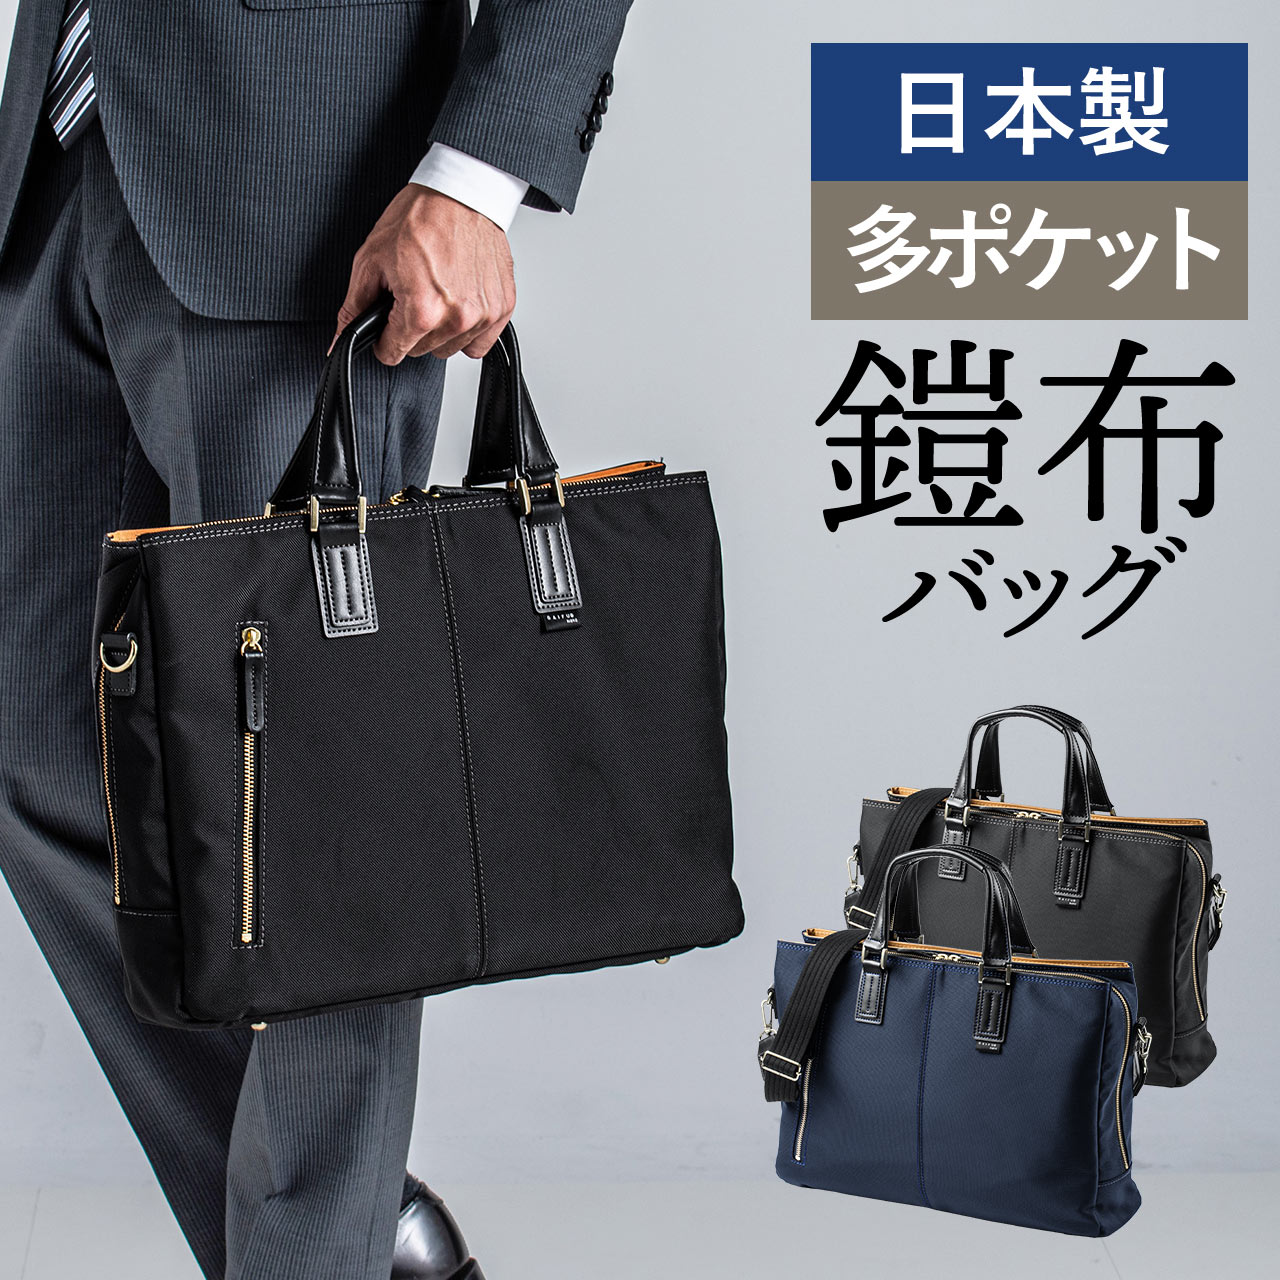 日本製ビジネスバッグ（豊岡縫製・国産素材鎧布使用・2WAY・高強度ナイロン使用・ダブル収納・三方ファスナー） 200-BAG157の販売商品  通販ならサンワダイレクト